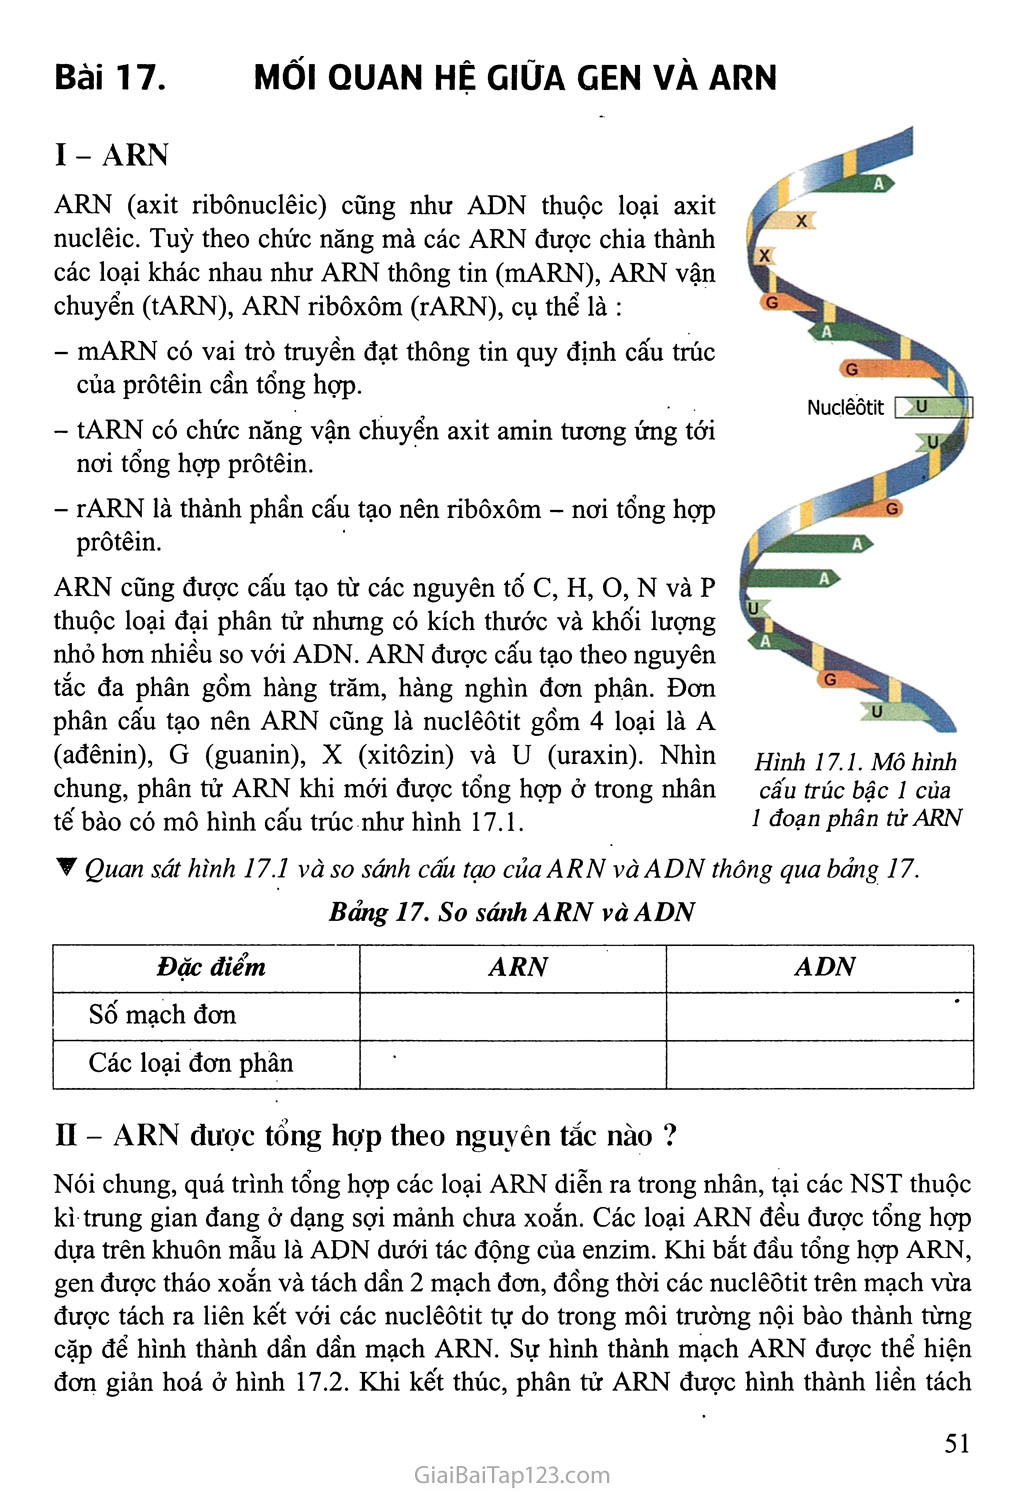 Bài 17. Mối quan hệ giữa gen và ARN trang 1